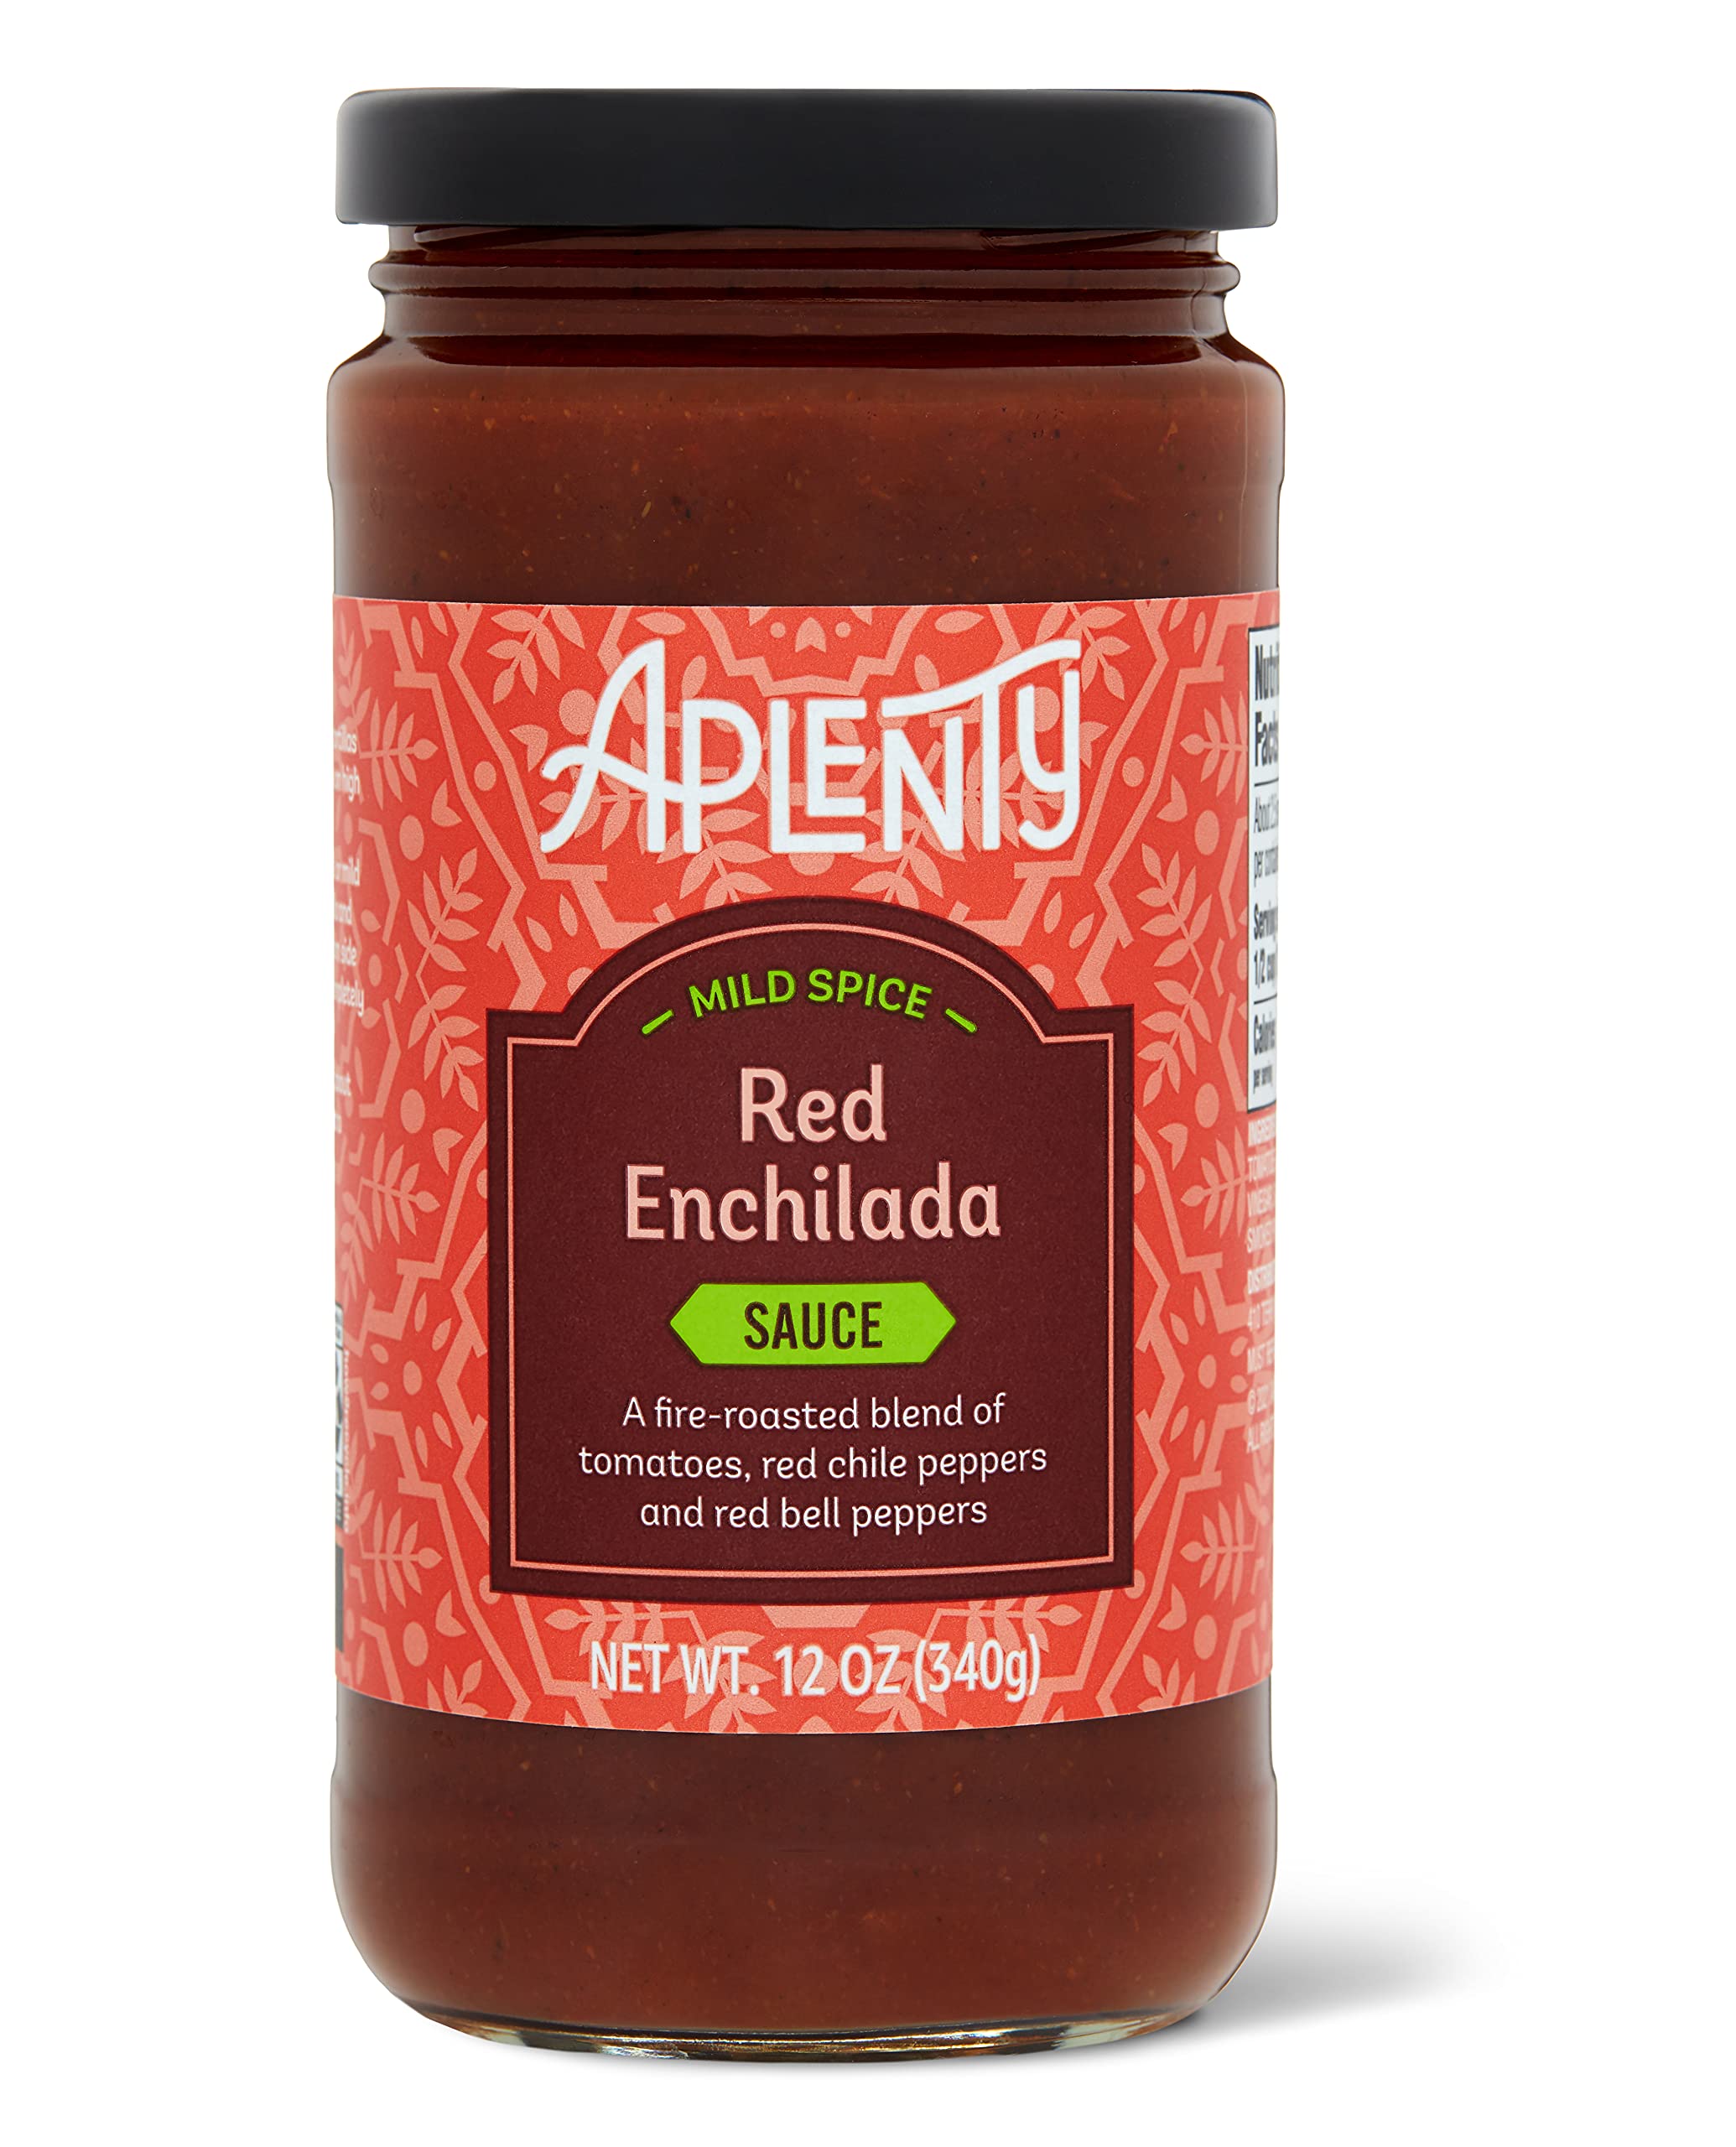 12-Oz Amazon Brand Aplenty Red Enchilada Sauce (Mild Spice) $1.46 + Free Shipping w/ Prime or on $35+